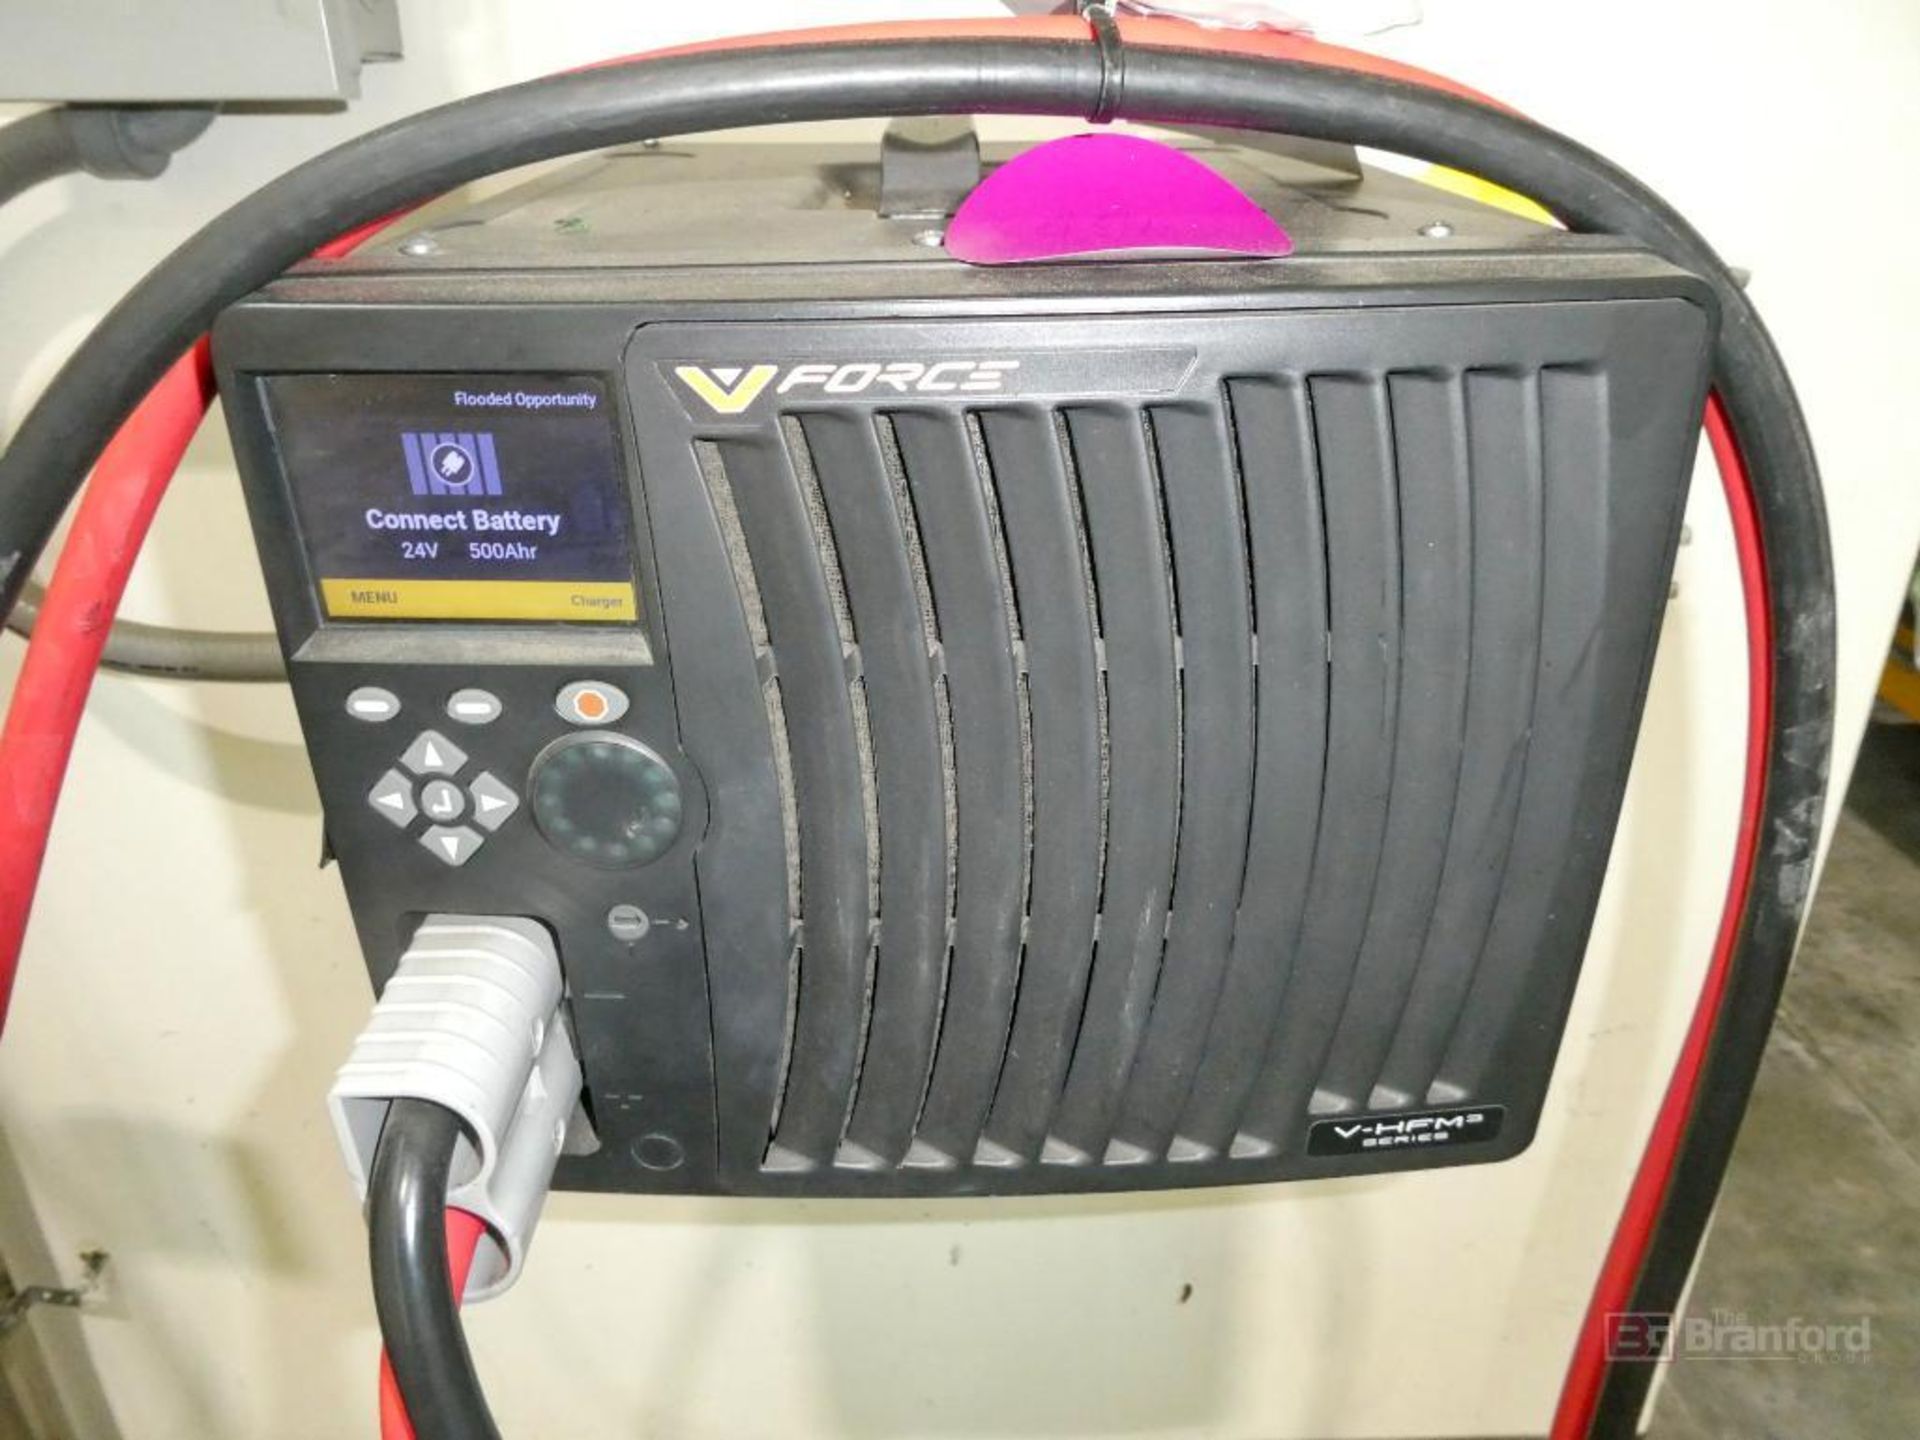 V-Force Model FS3-MP344-3, Forklift Multi-Voltage Battery Charger - Image 2 of 3